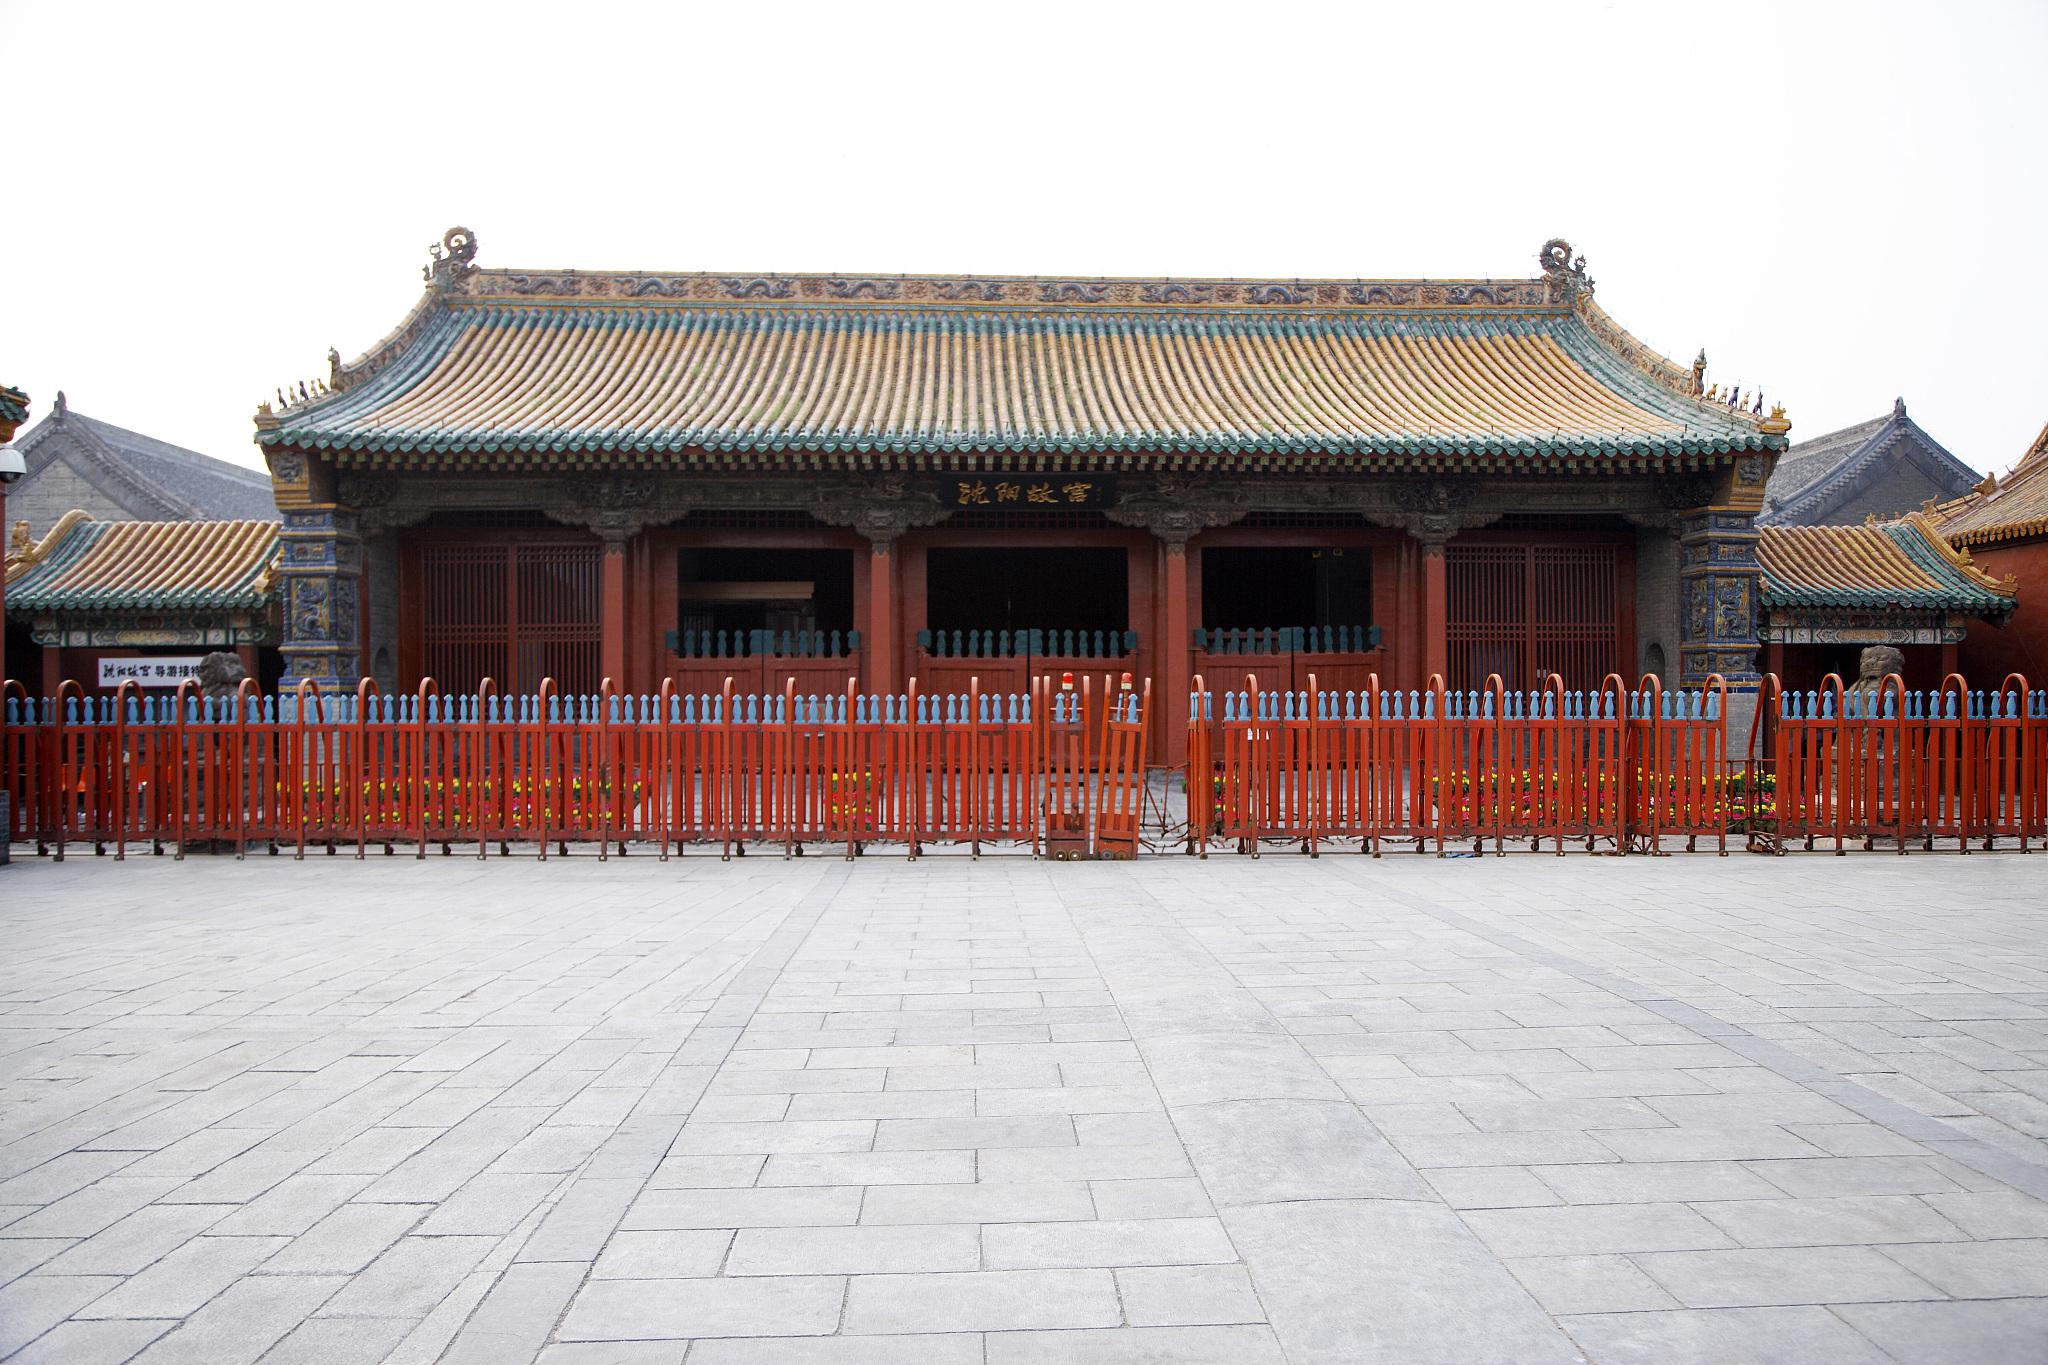 沈阳故宫,作为中国现存最古老的皇家宫殿之一,坐落在辽宁省沈阳市中心